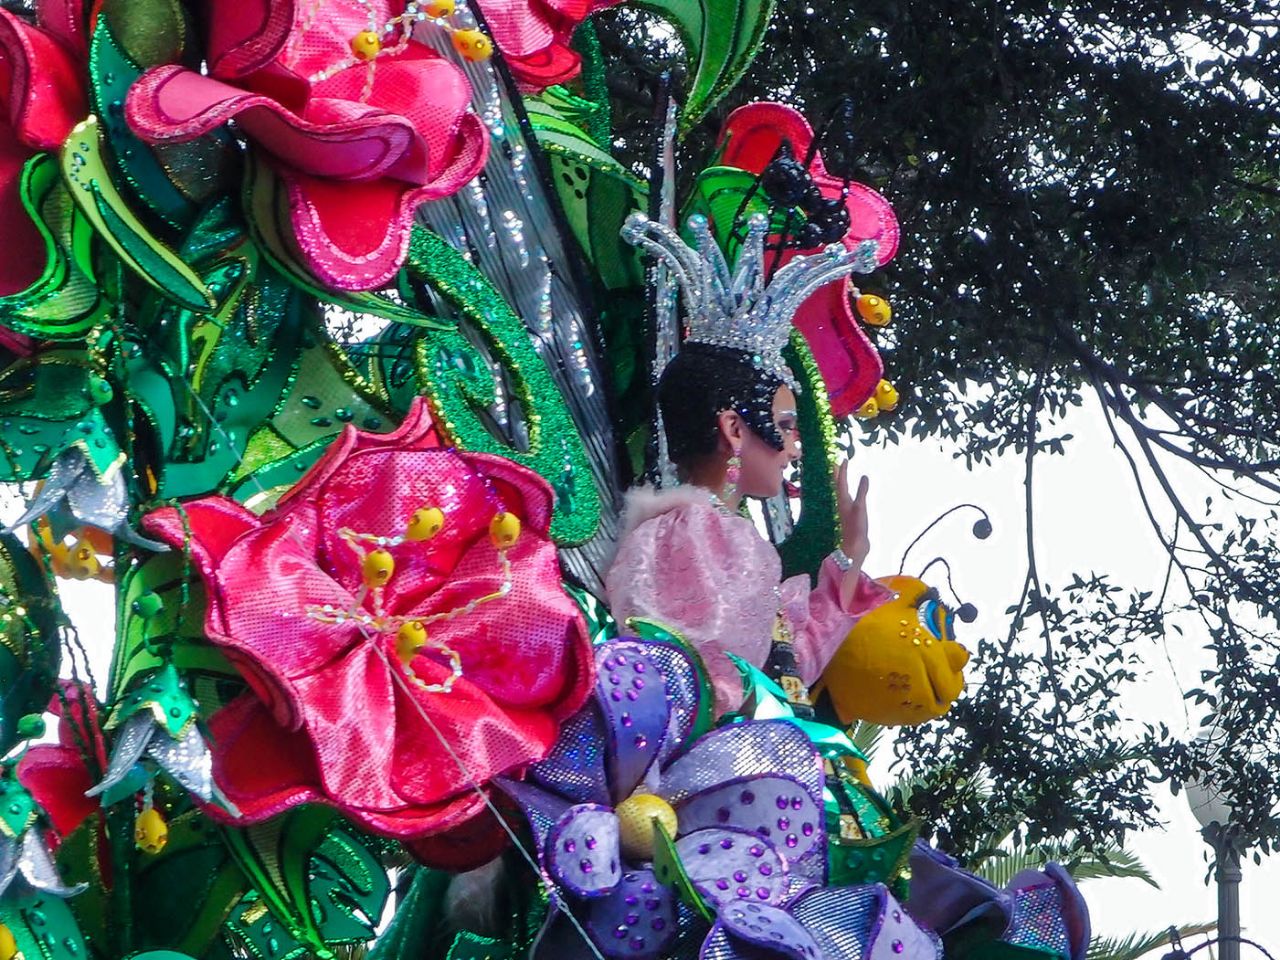 Карнавал  «Фантазия» на Тенерифе Санта-Крус-де-Тенерифе, остров Тенерифе, Испания